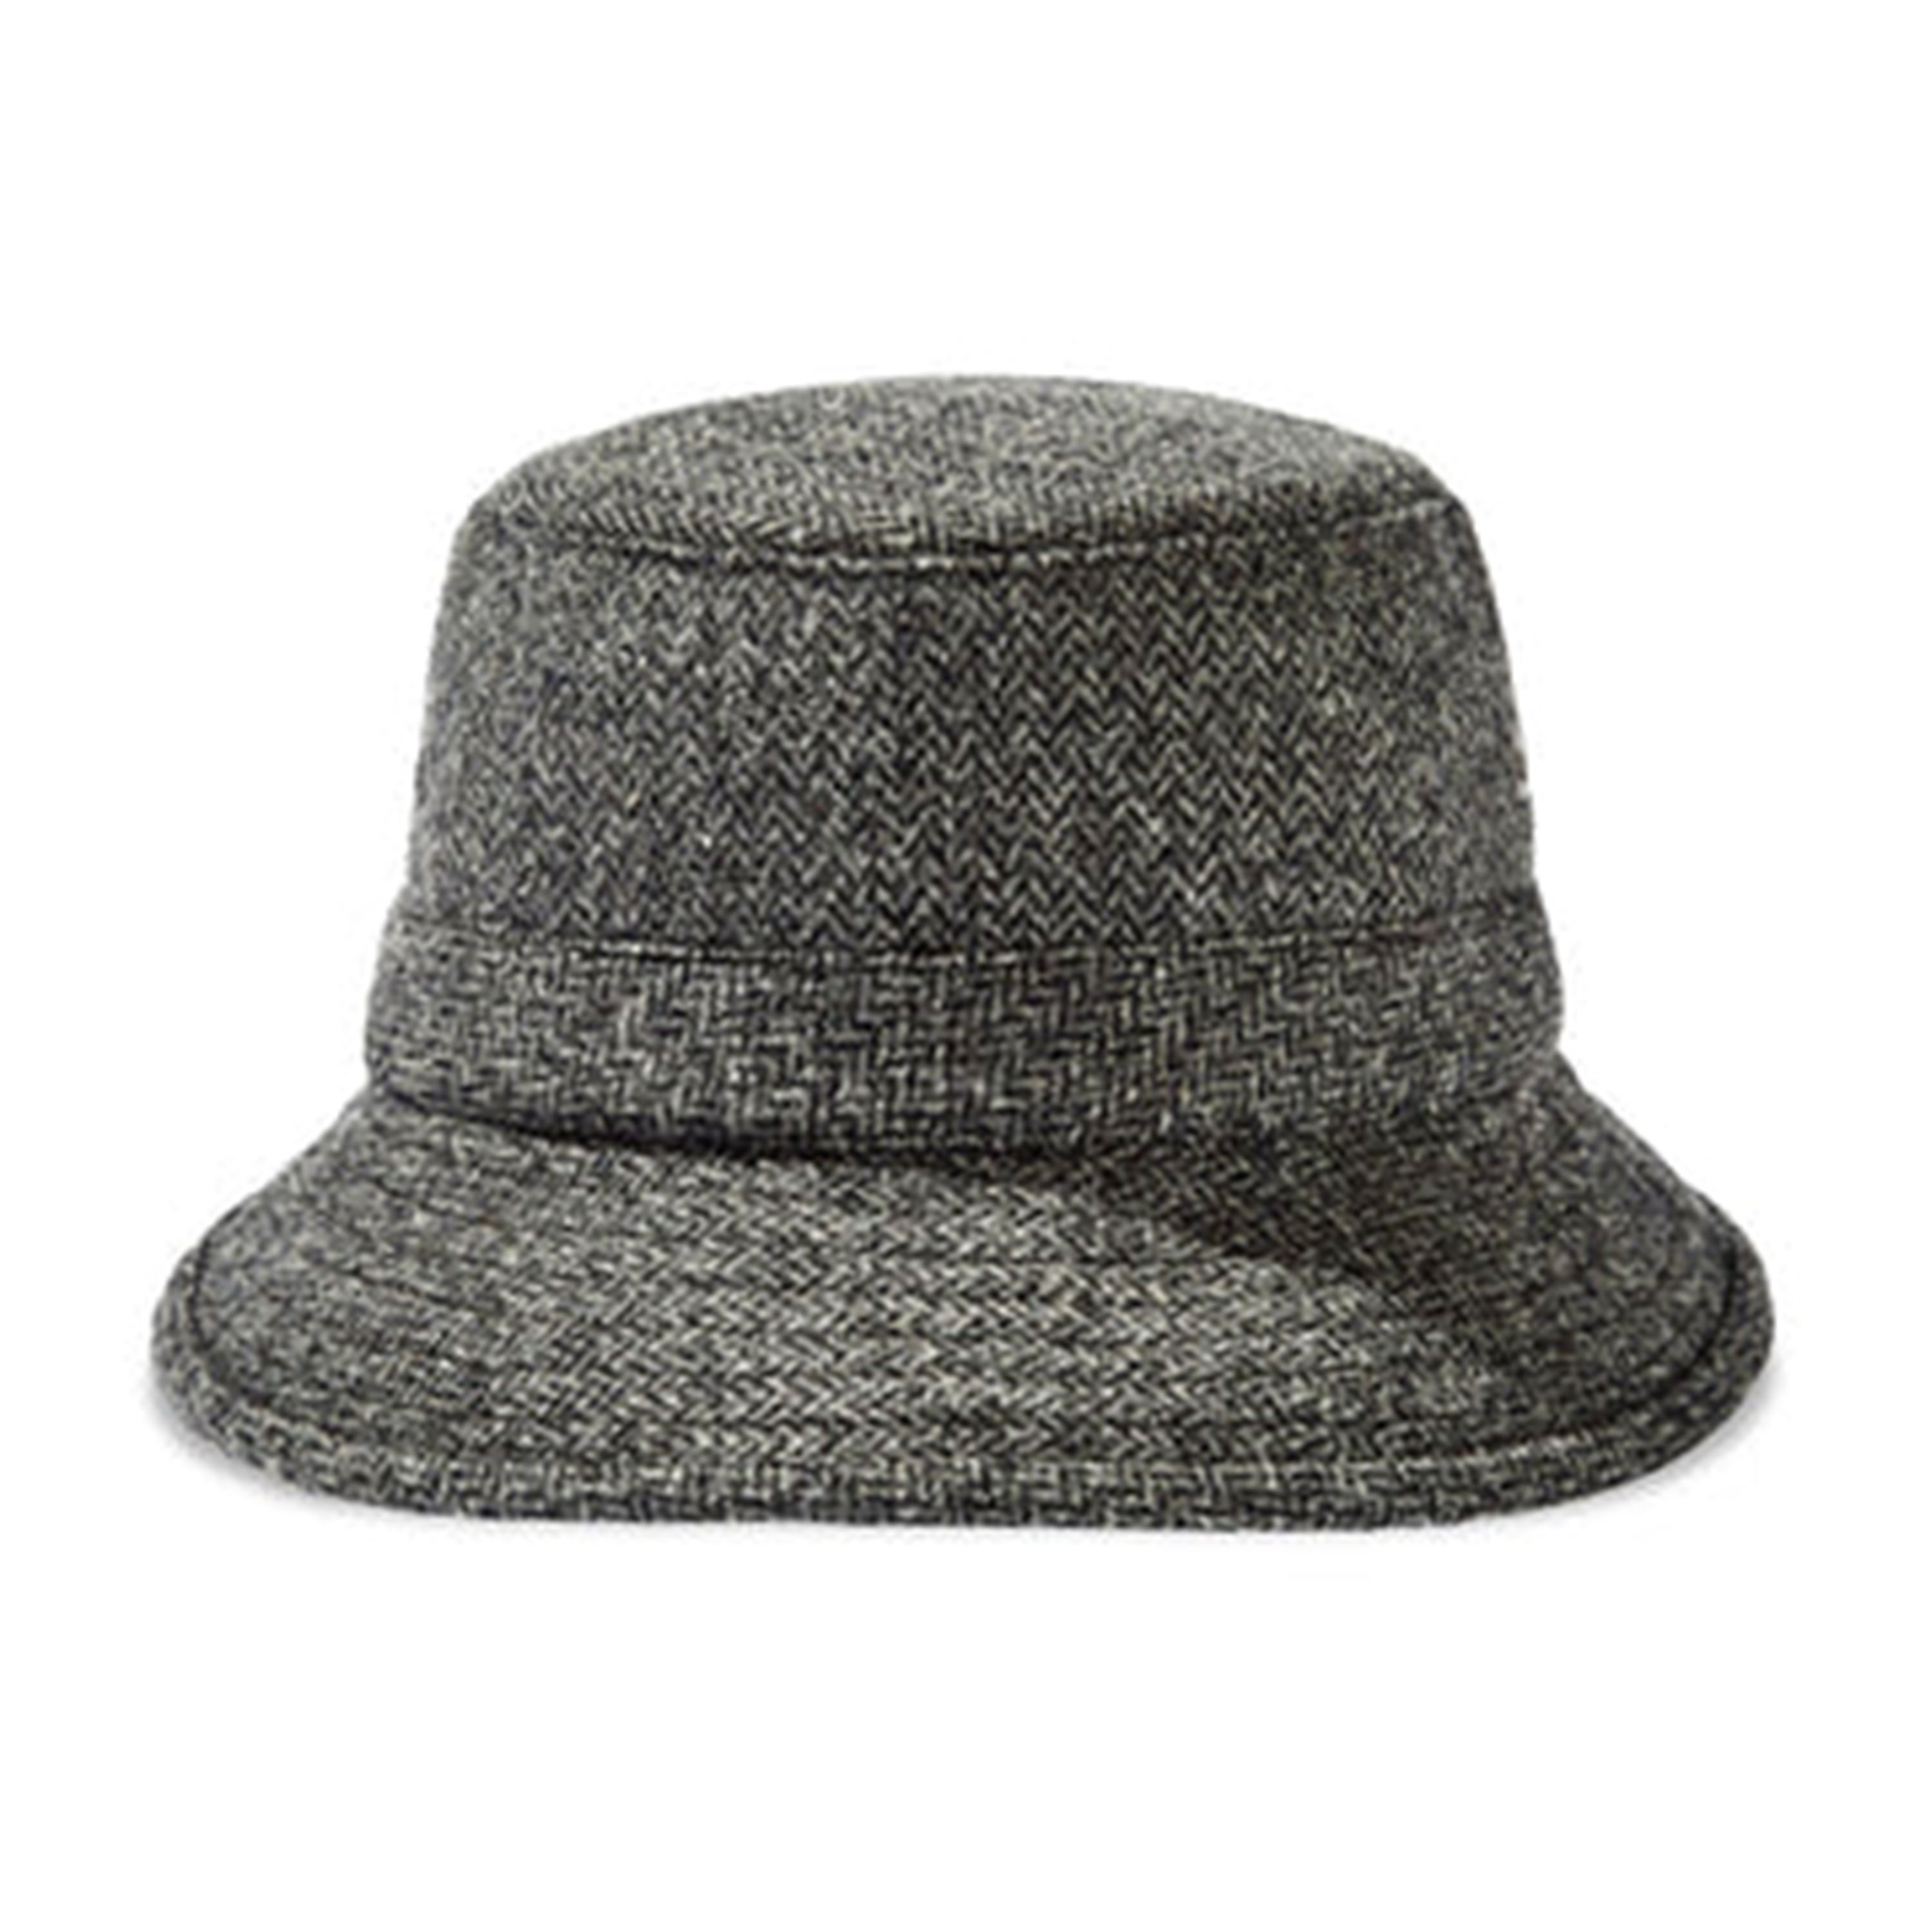 Tilley Warmth Bucket Hat